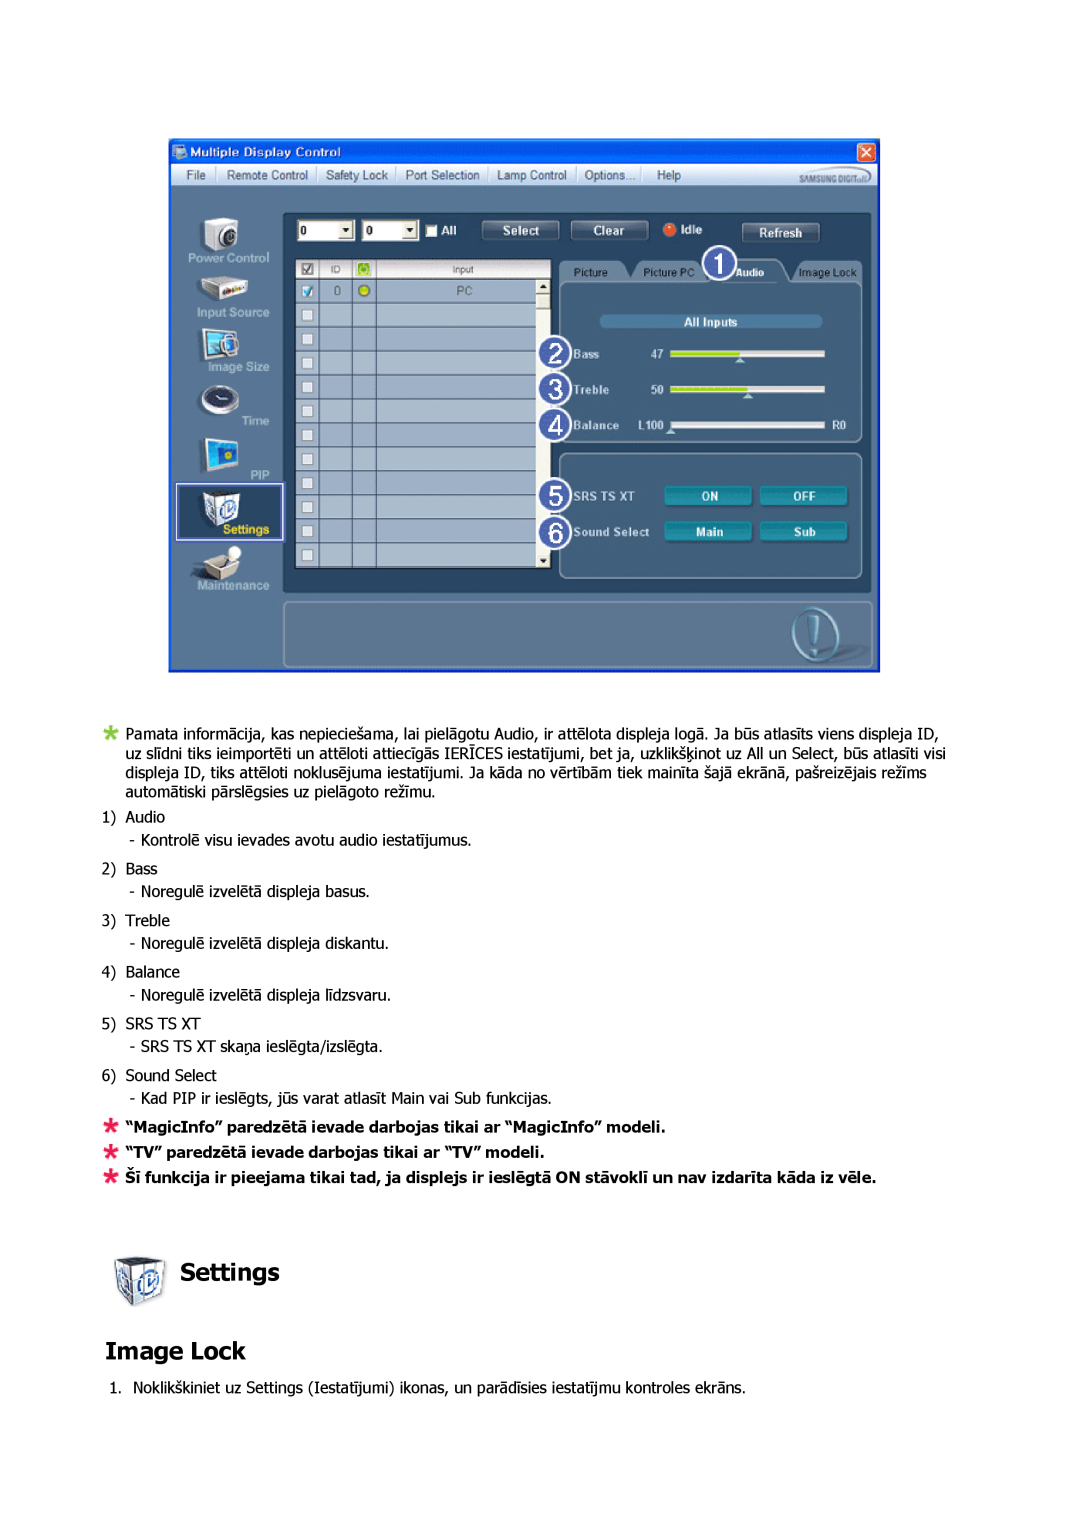 Samsung PH63KPFLBF/EN manual Settings Image Lock, “MagicInfo” paredzētā ievade darbojas tikai ar “MagicInfo” modeli 